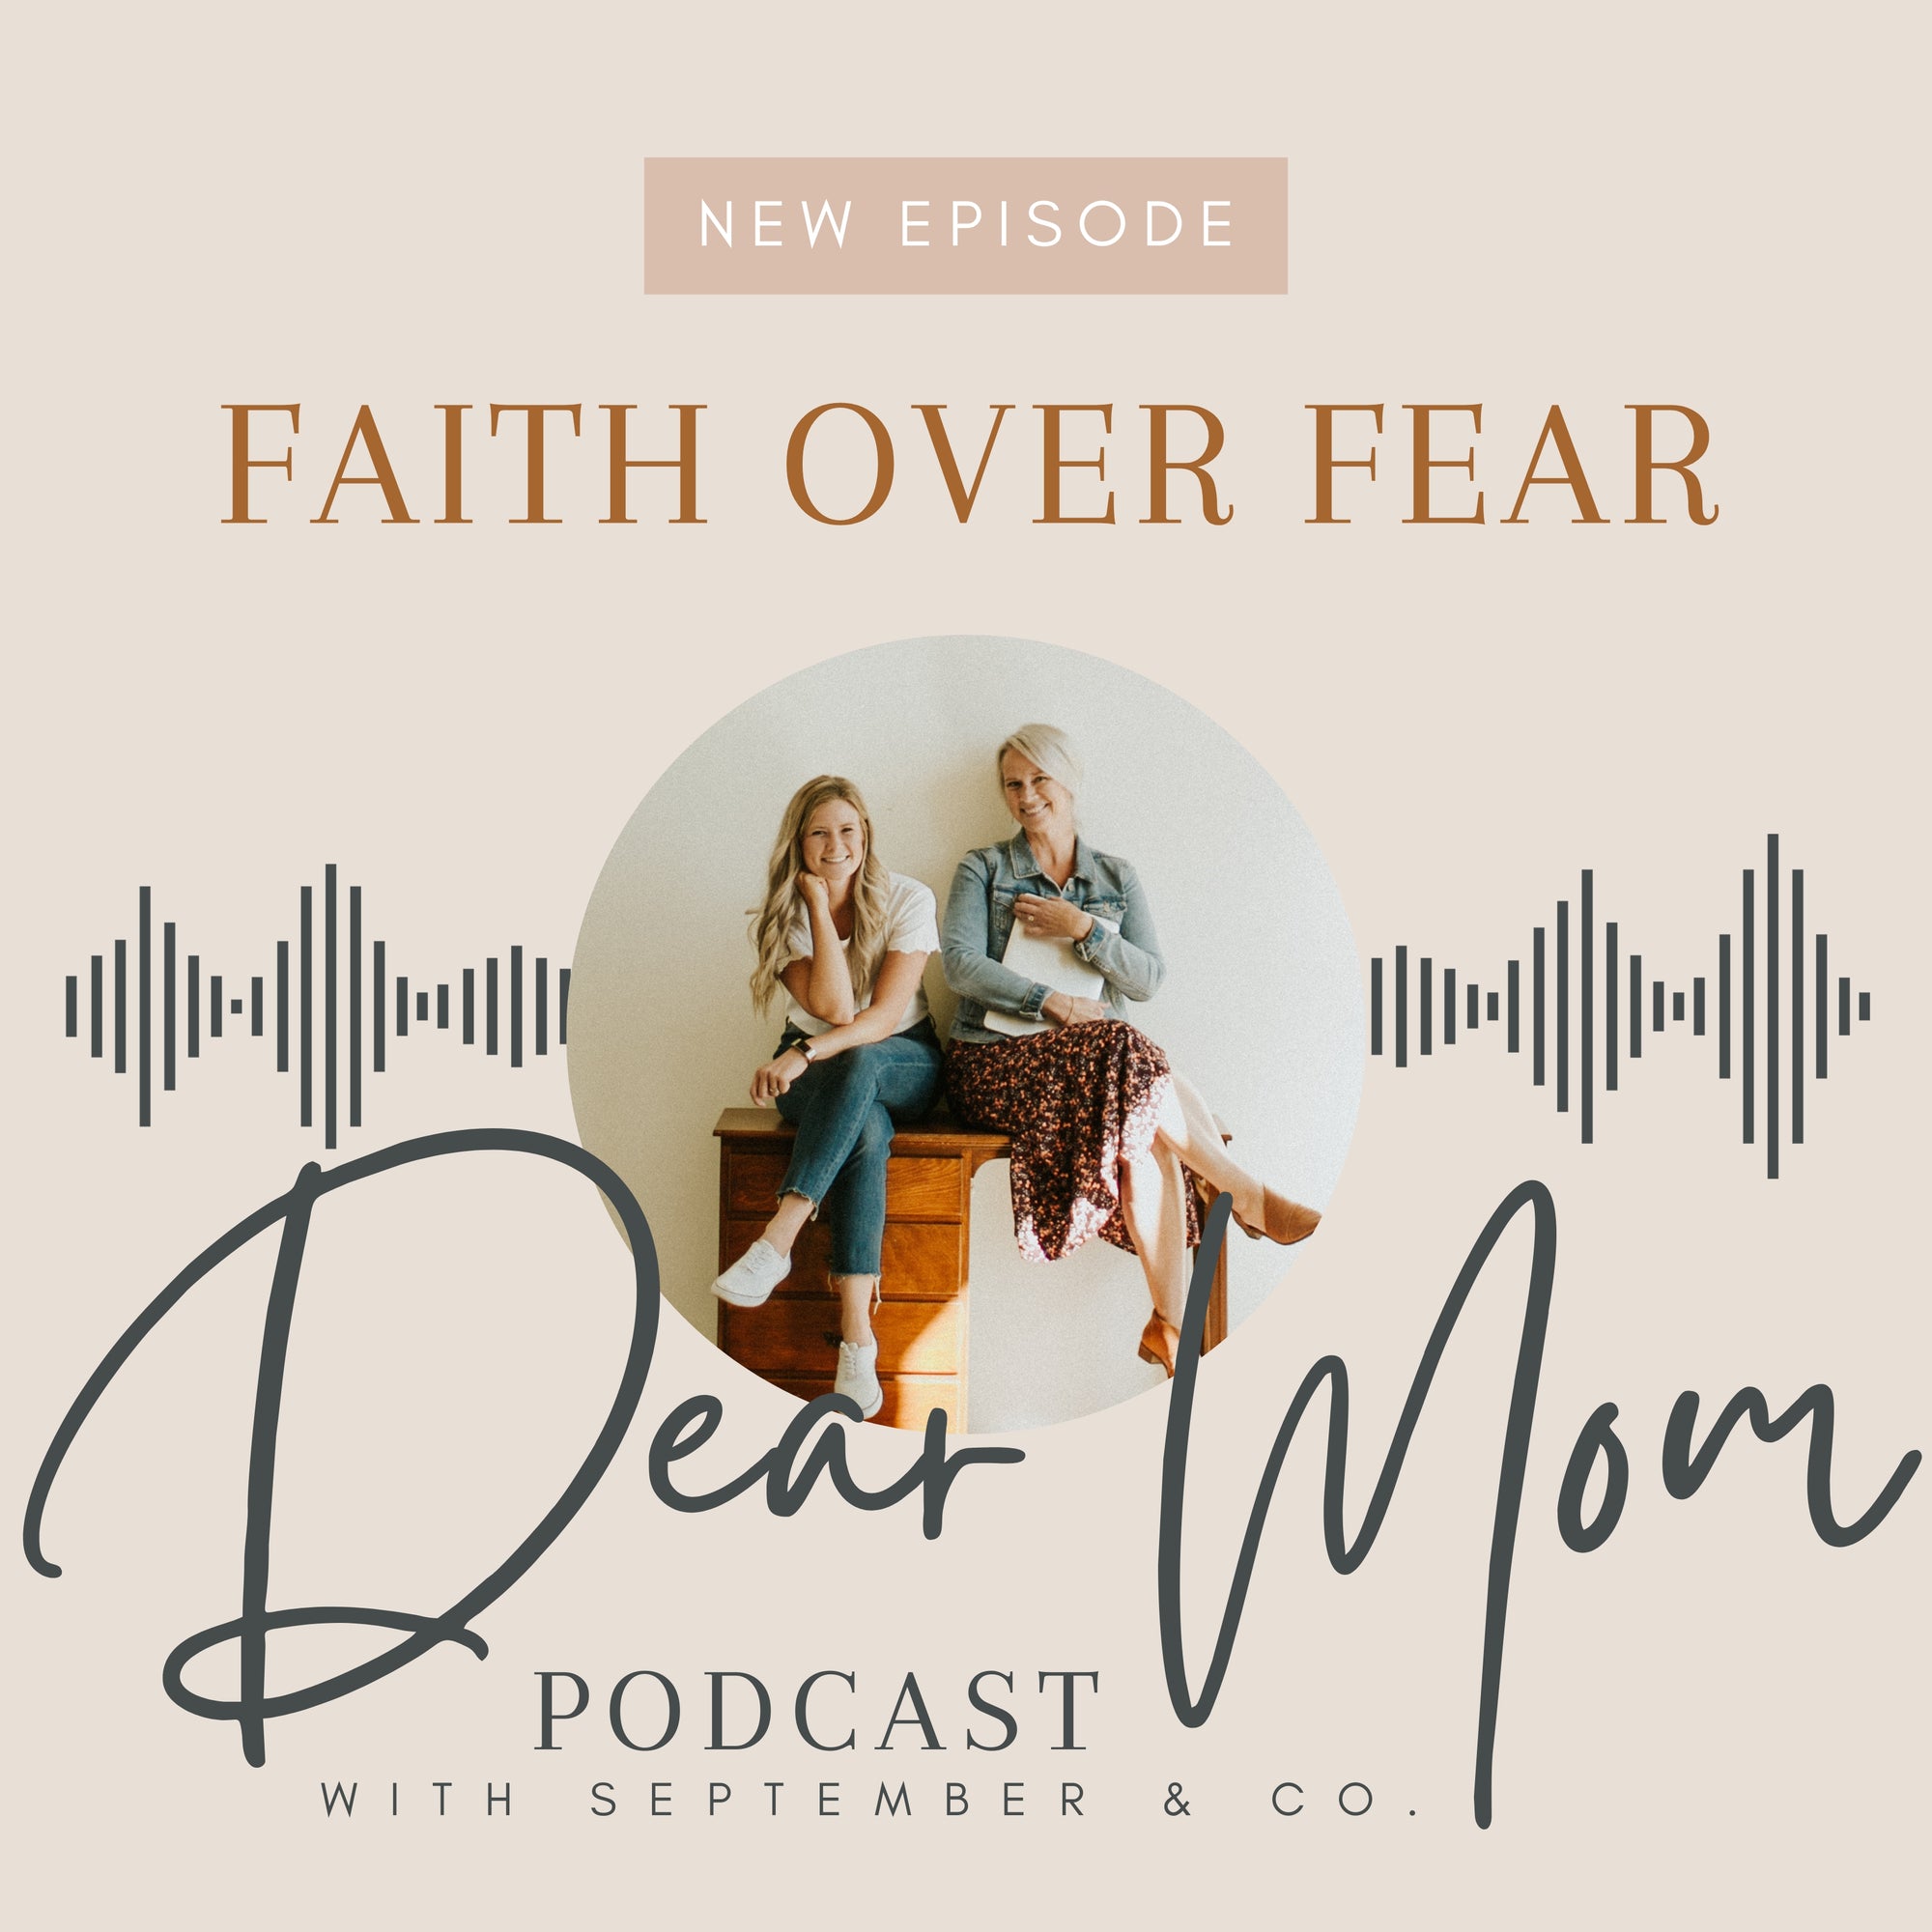 Episode 1: Faith over Fear